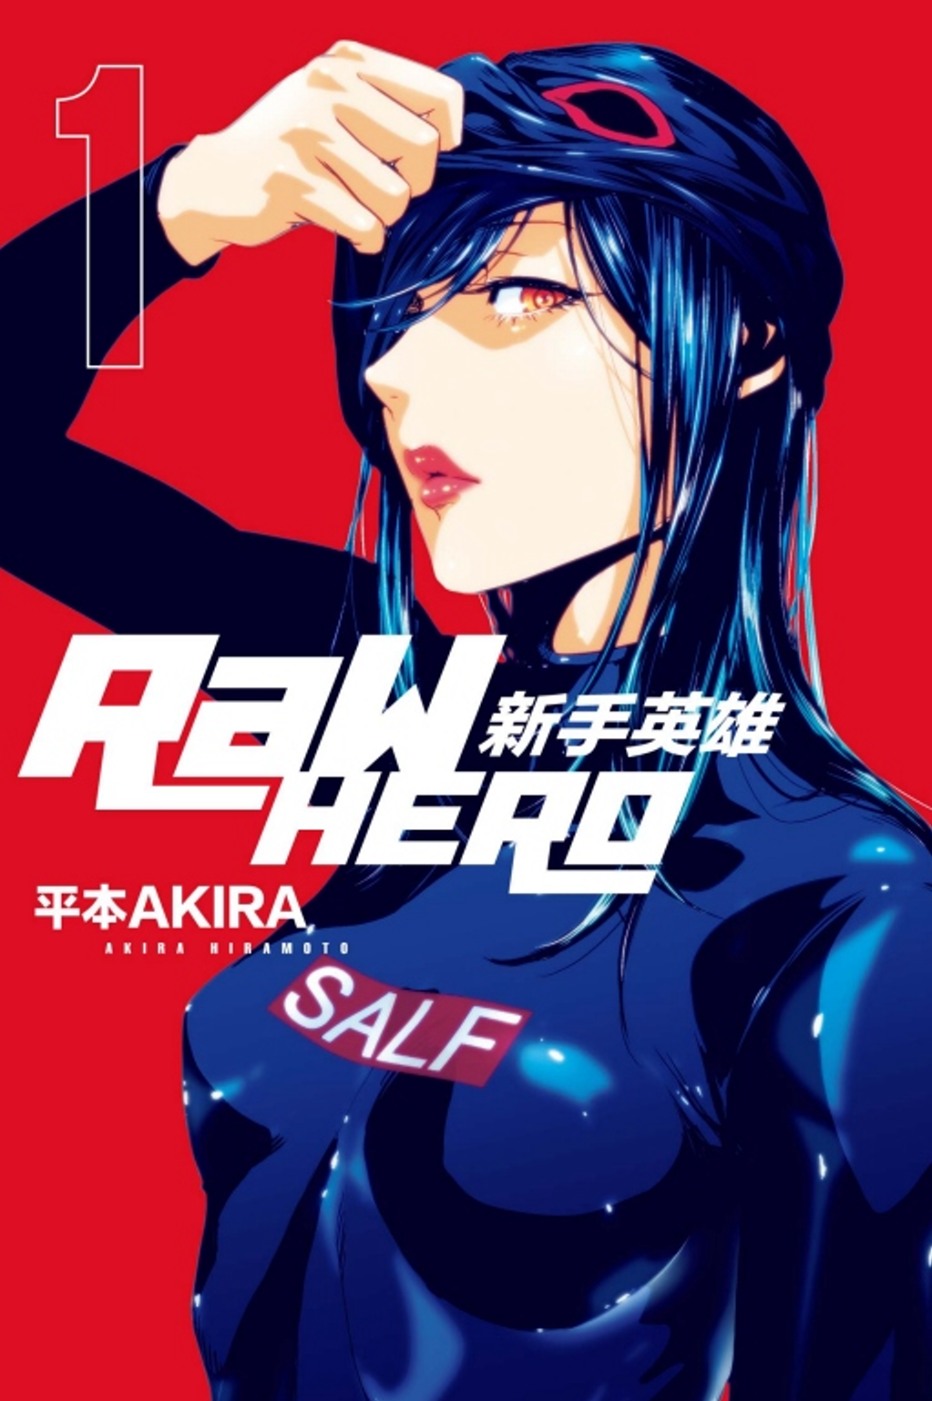 RaW HERO 新手英雄 1